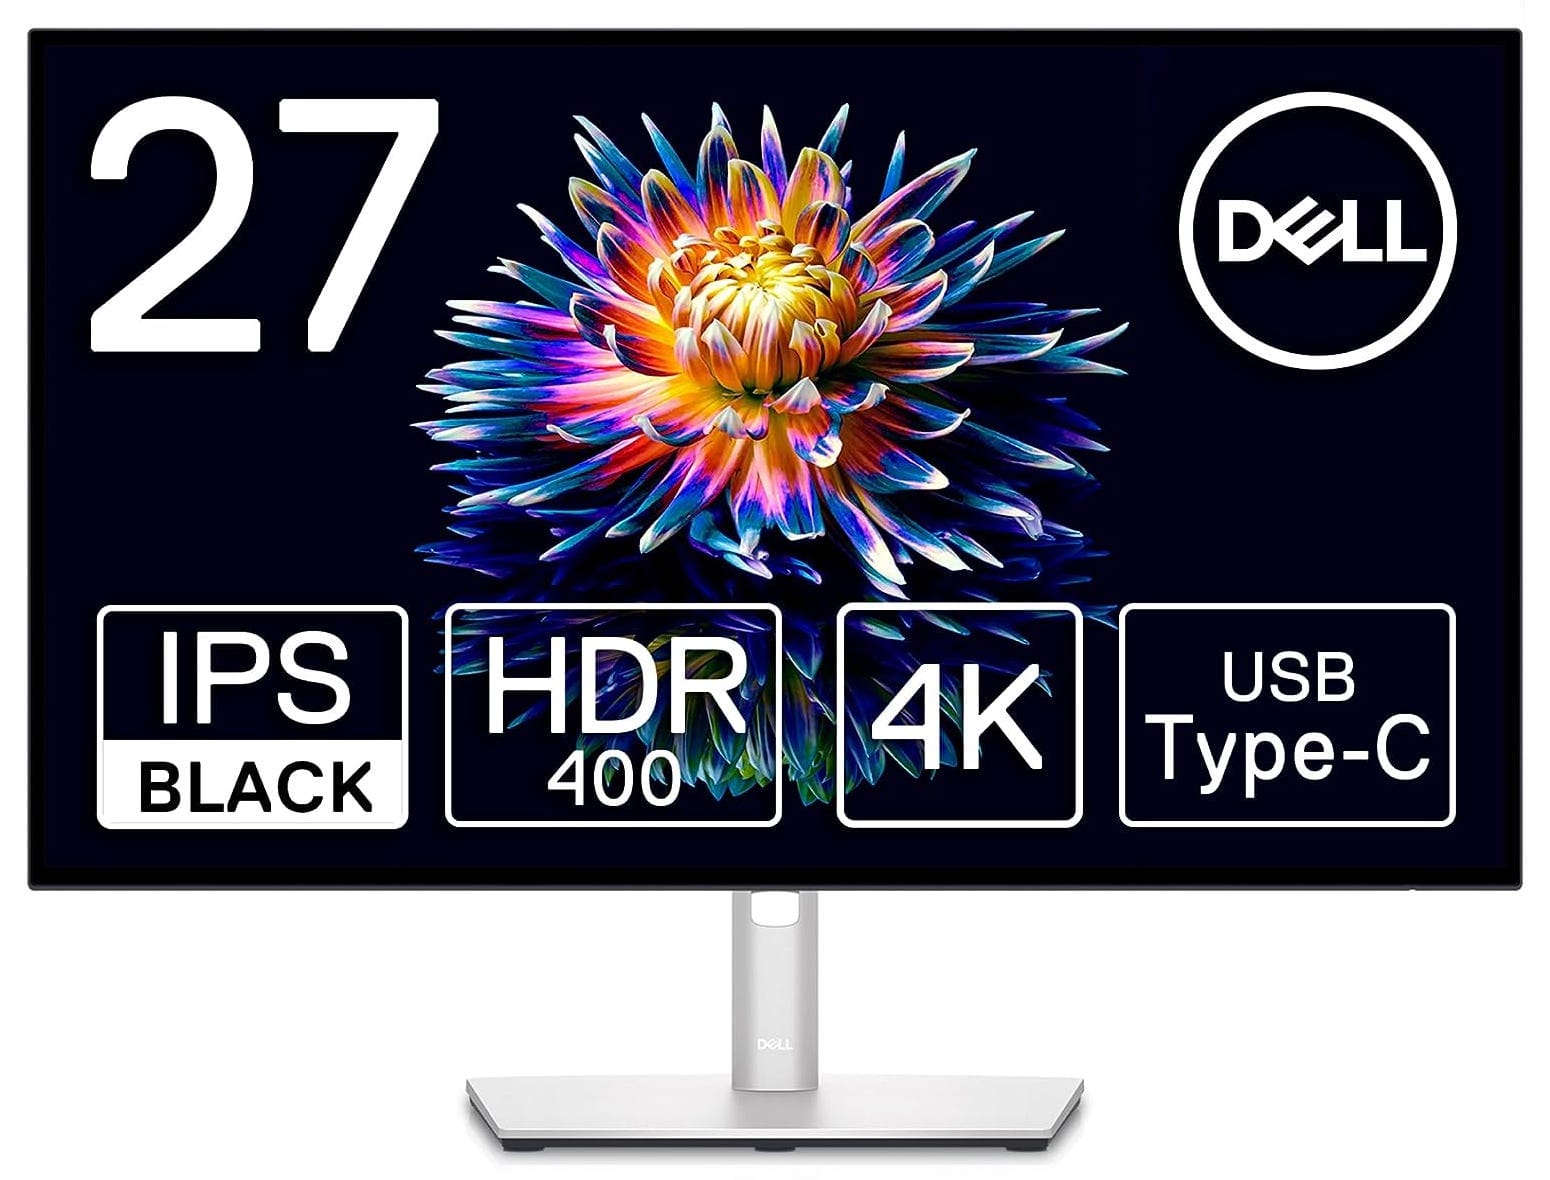 Amazon ブラックフライデー：DellのUSB-C対応27インチ4Kディスプレイが割引価格に